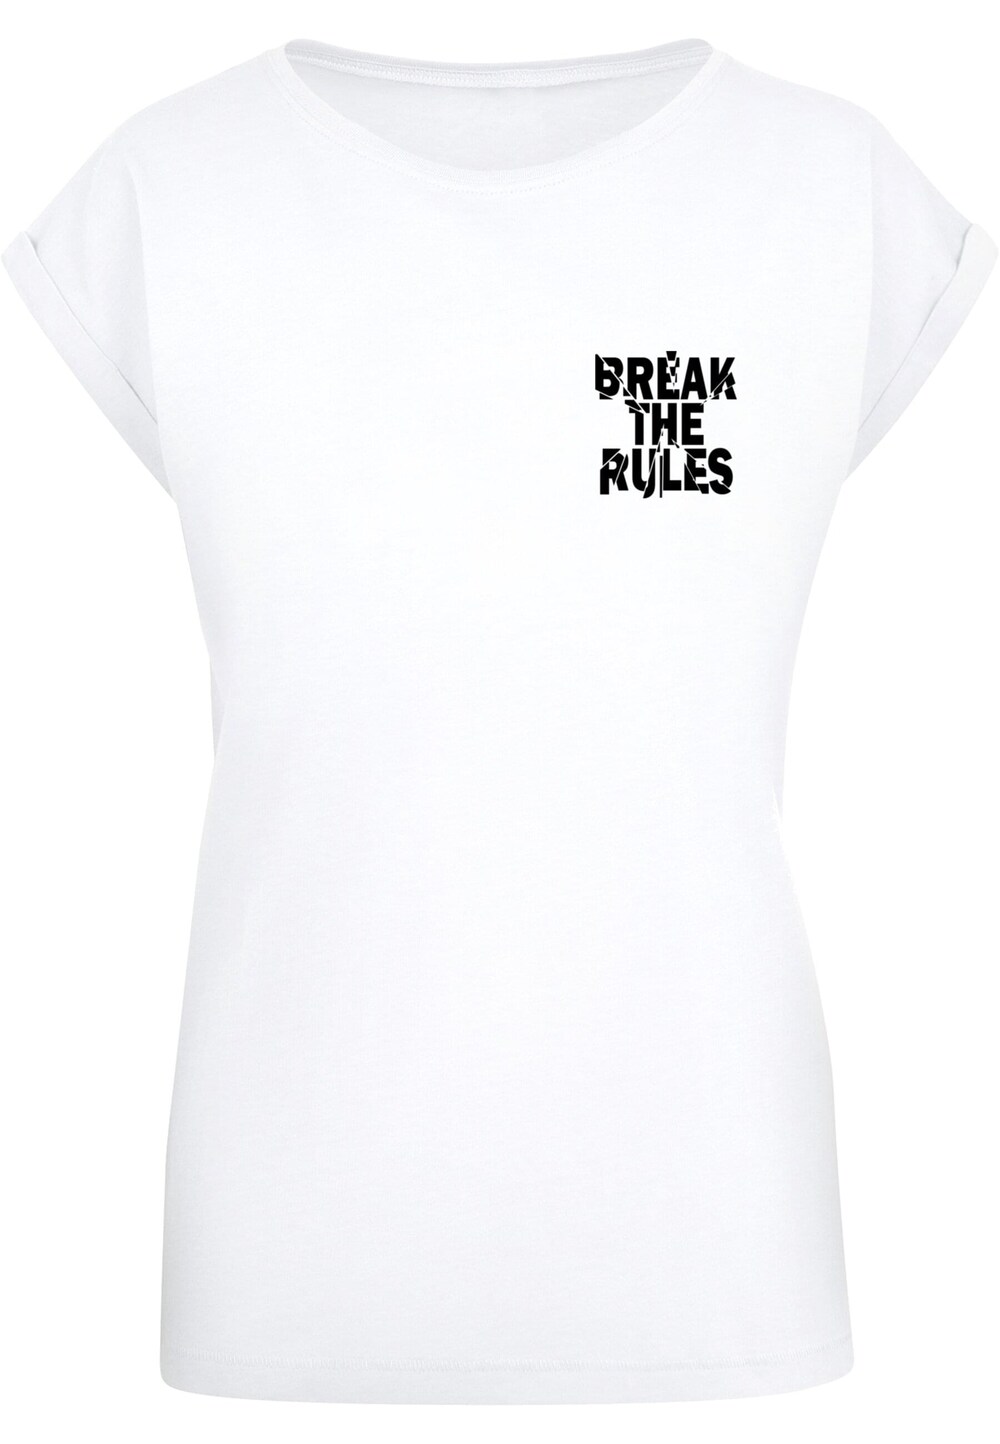 Рубашка Merchcode Break The Rules 2, белый рюкзак grizzly школьный анатомическая спинка для мальчиков break rules 42x31x22 см ru 132 2 2